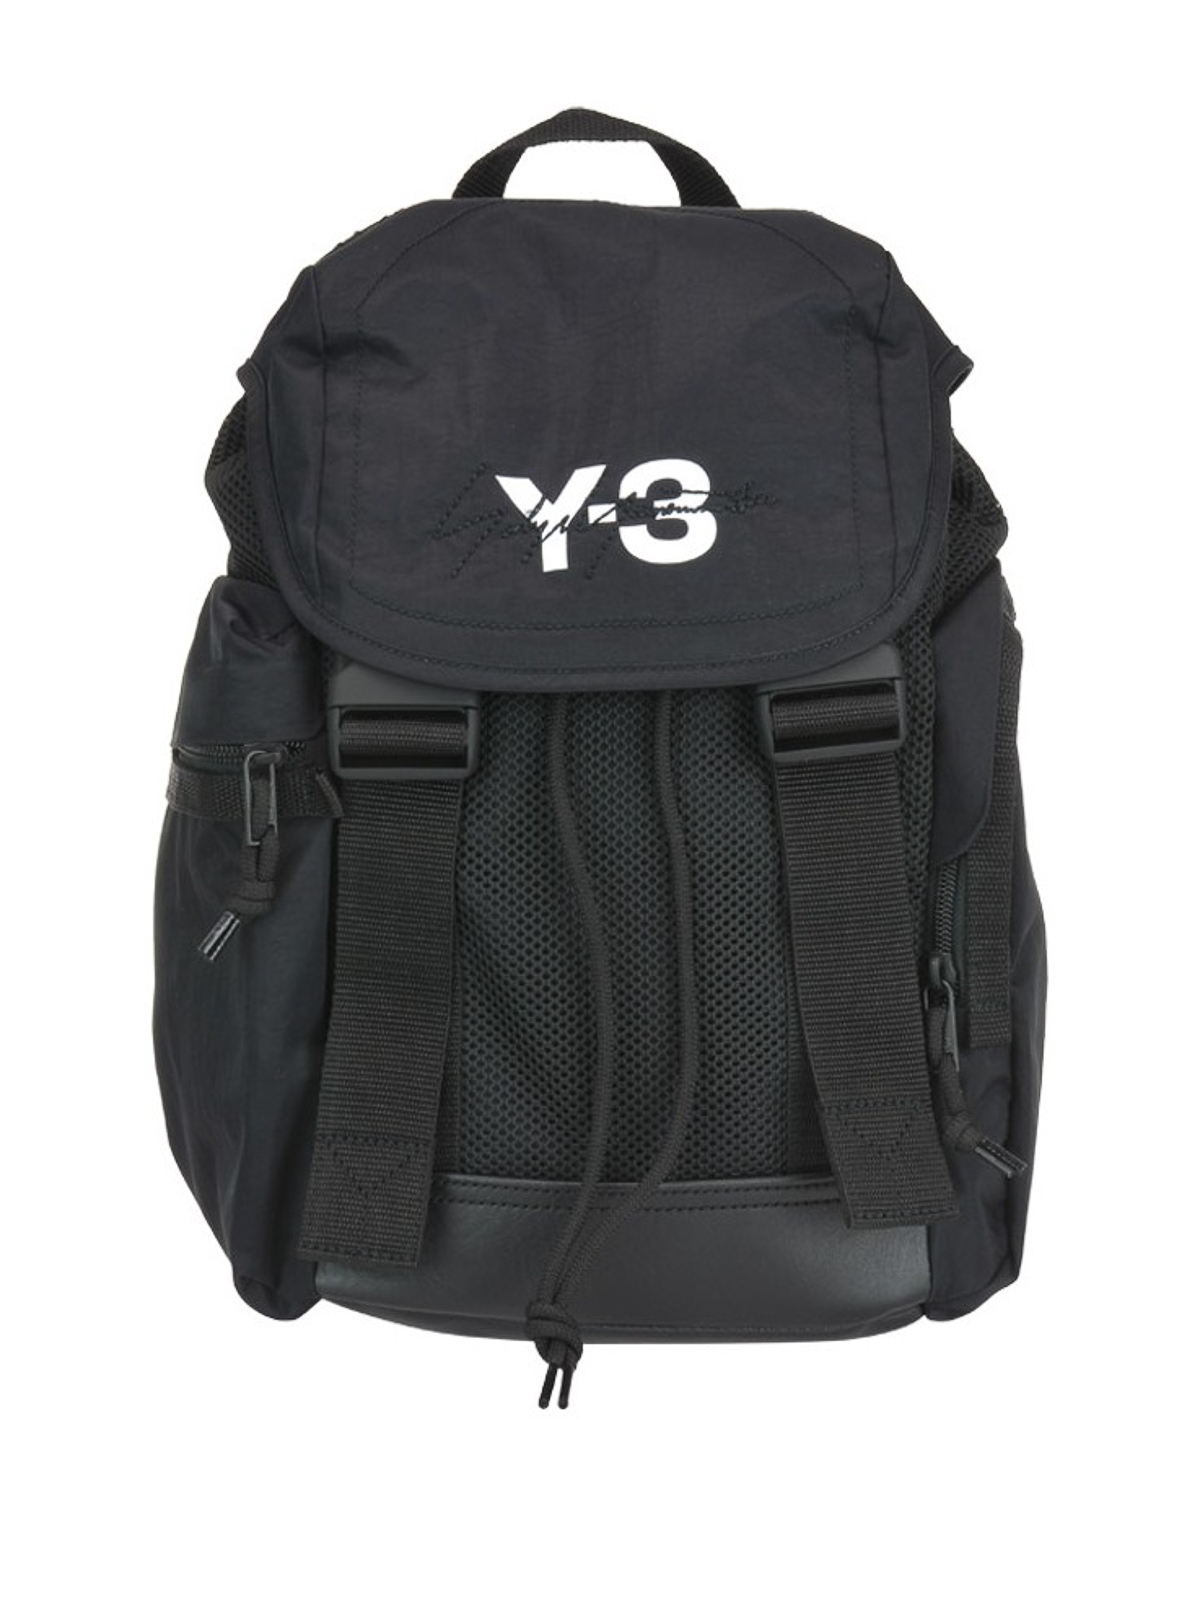 新品 Y-3 XS MOBILITY BAG リュック バックパック